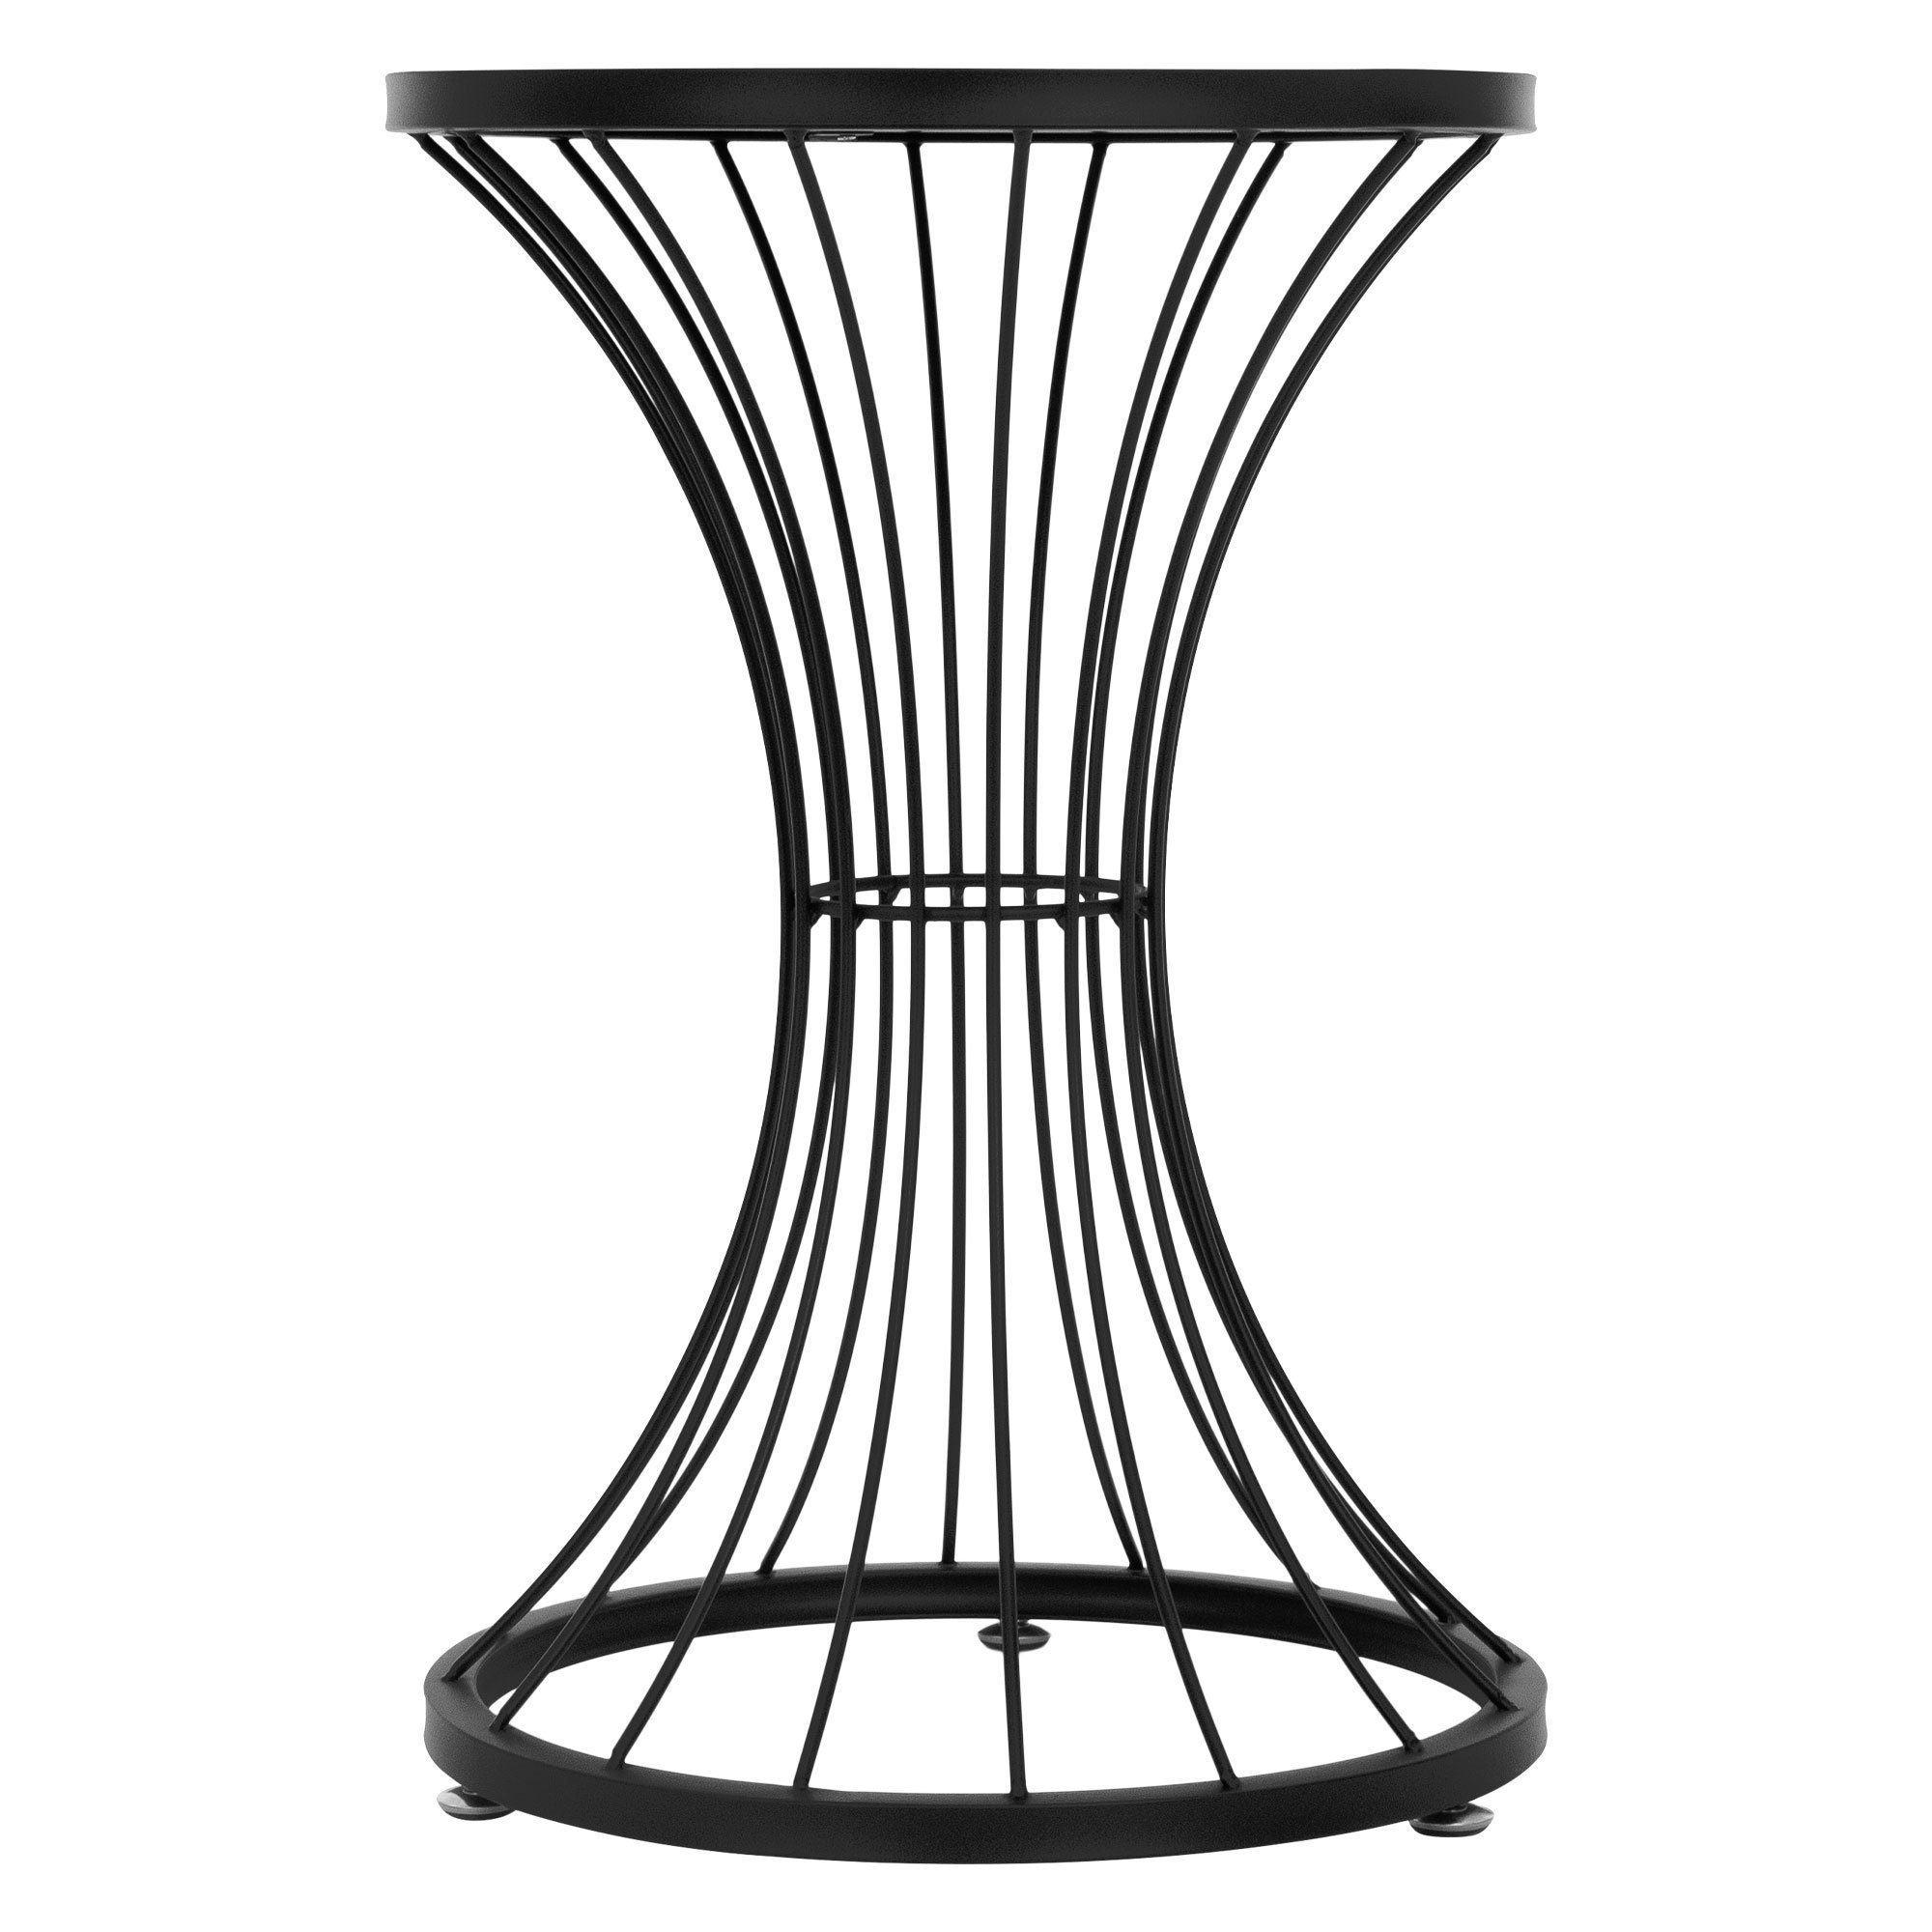 Sofatisch Schwarz Tischplatte Metalltisch Metall Ø38x57cm Couchtisch Stundenglas-Form Beistelltisch Wohnzimmertisch Kaffeetisch, ML-DESIGN Rund Holz